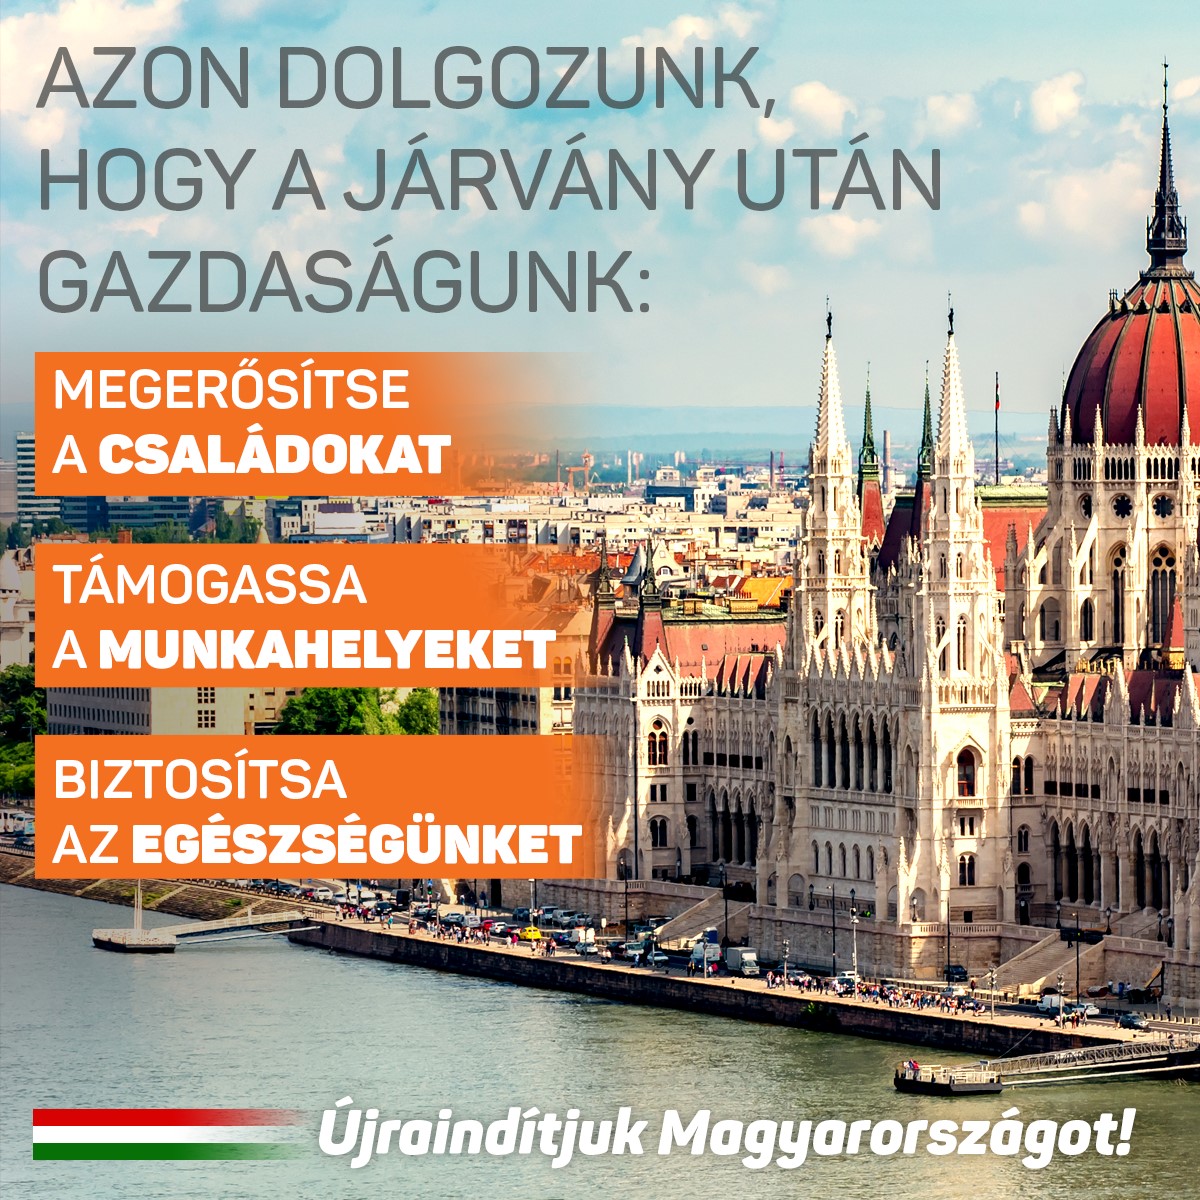 Azon dolgozunk, hogy a járvány után gazdaságunk﻿﻿﻿ megerősítse﻿﻿﻿﻿ a családokat, támogassa a﻿﻿﻿ munkahelyeket﻿ és biztosítsa az egészségünket. Újraindítjuk Magyarországot!